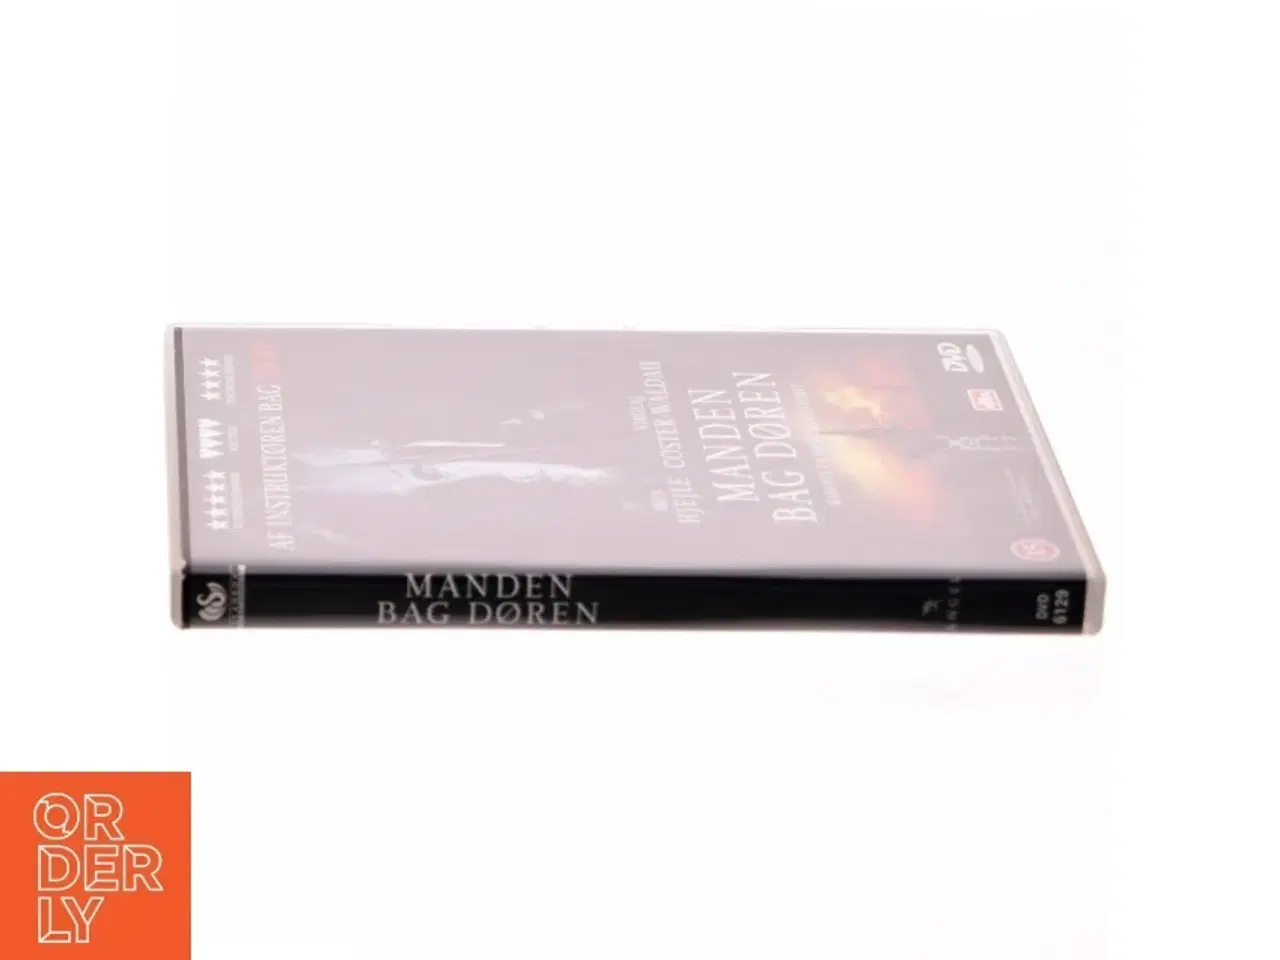 Billede 2 - Manden bag døren (DVD)